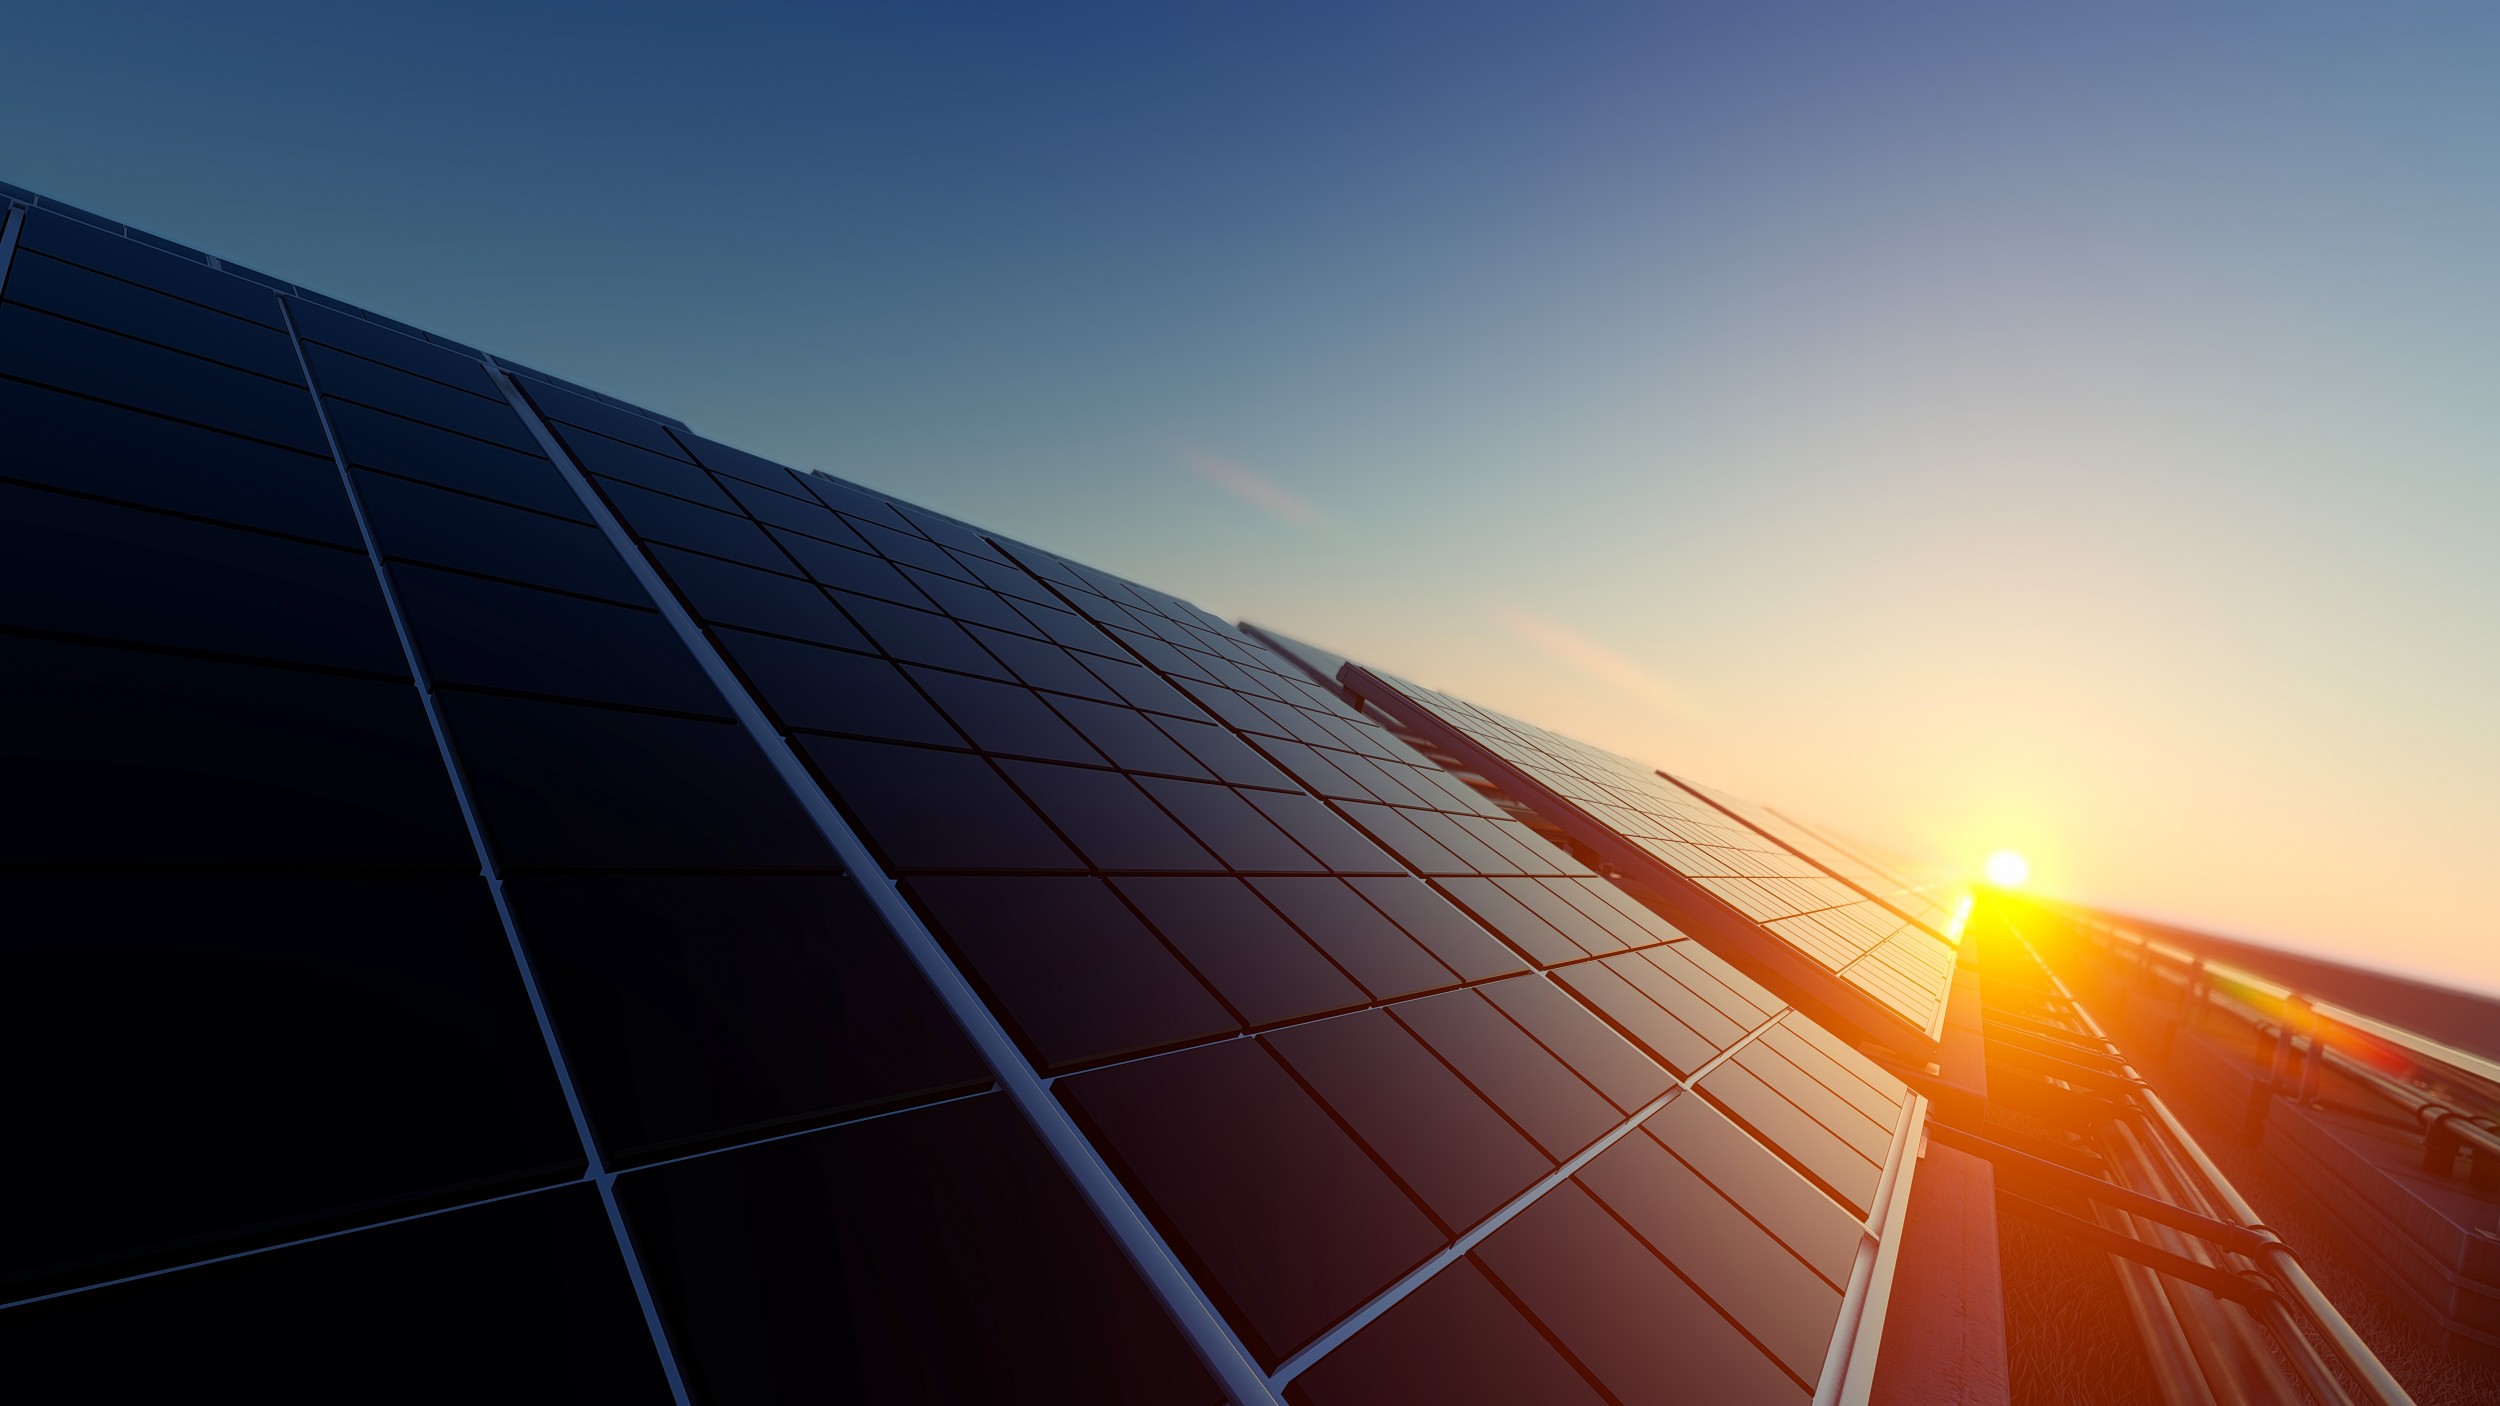 Les systèmes photovoltaïques pourraient aider à décentraliser la production d’énergie